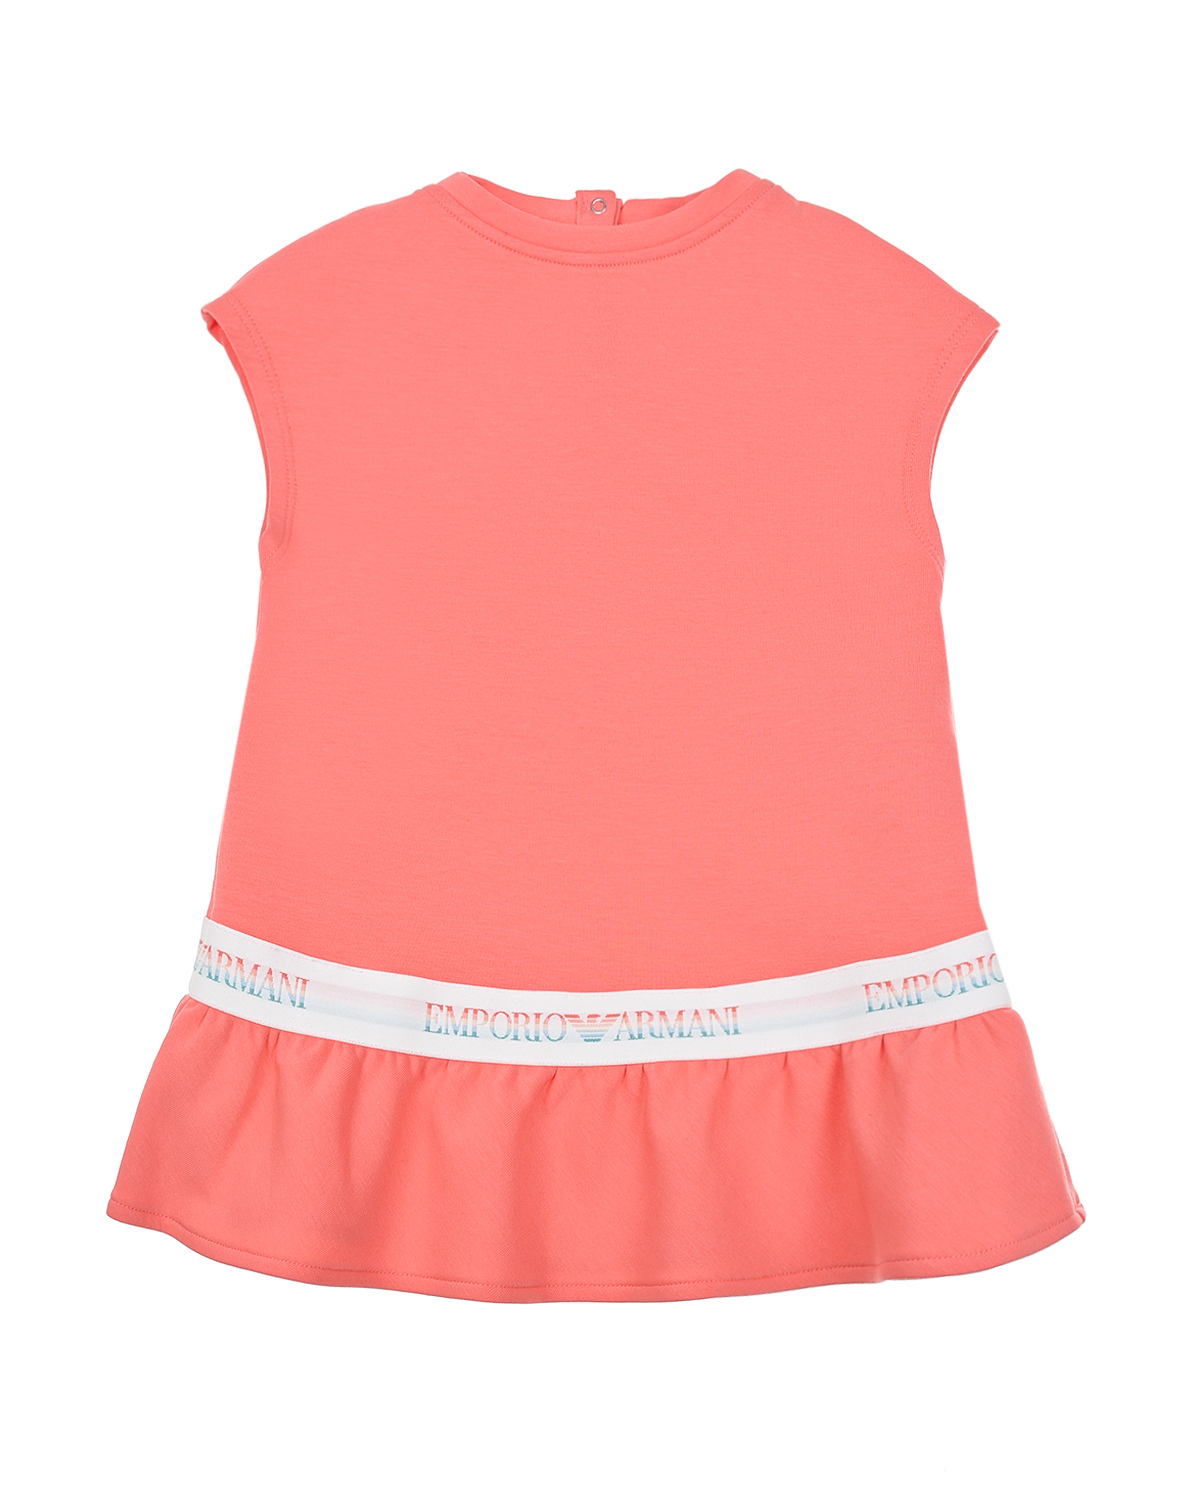 Коралловое платье с короткими рукавами Emporio Armani детское, размер 86, цвет нет цвета - фото 1